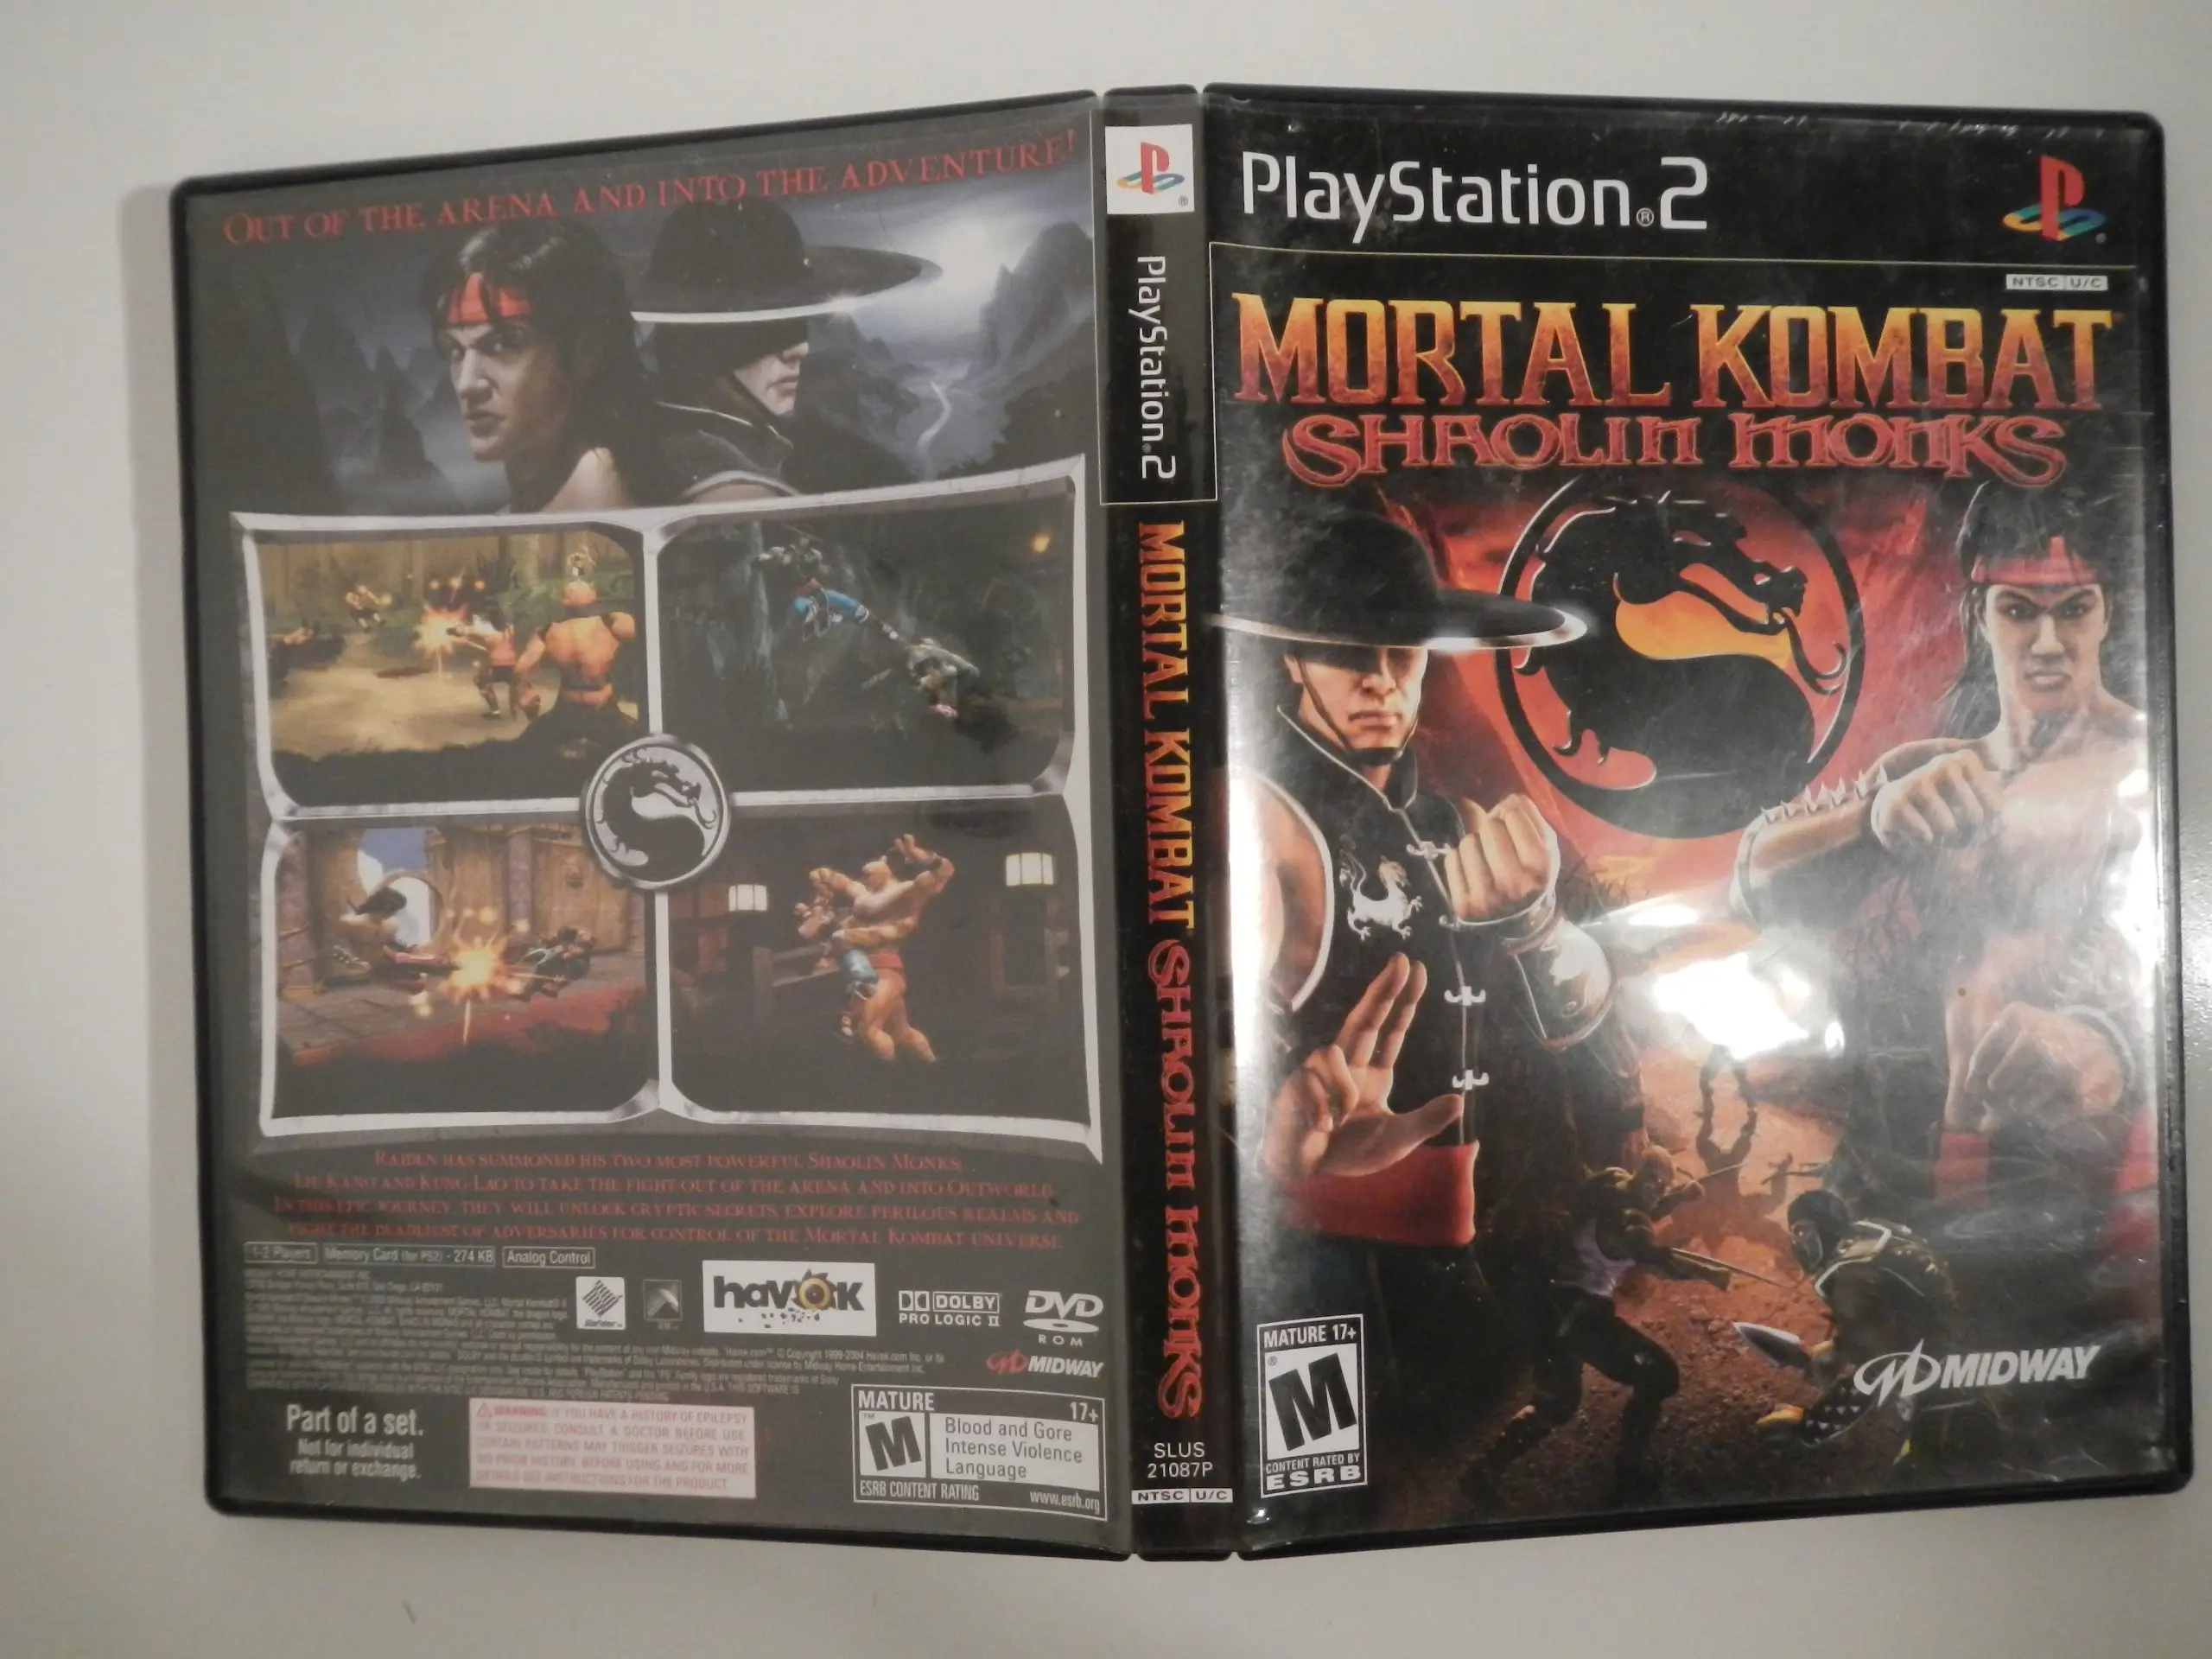 jugar mortal kombat shaolin monks - Cómo se llama el Mortal Kombat de play 2